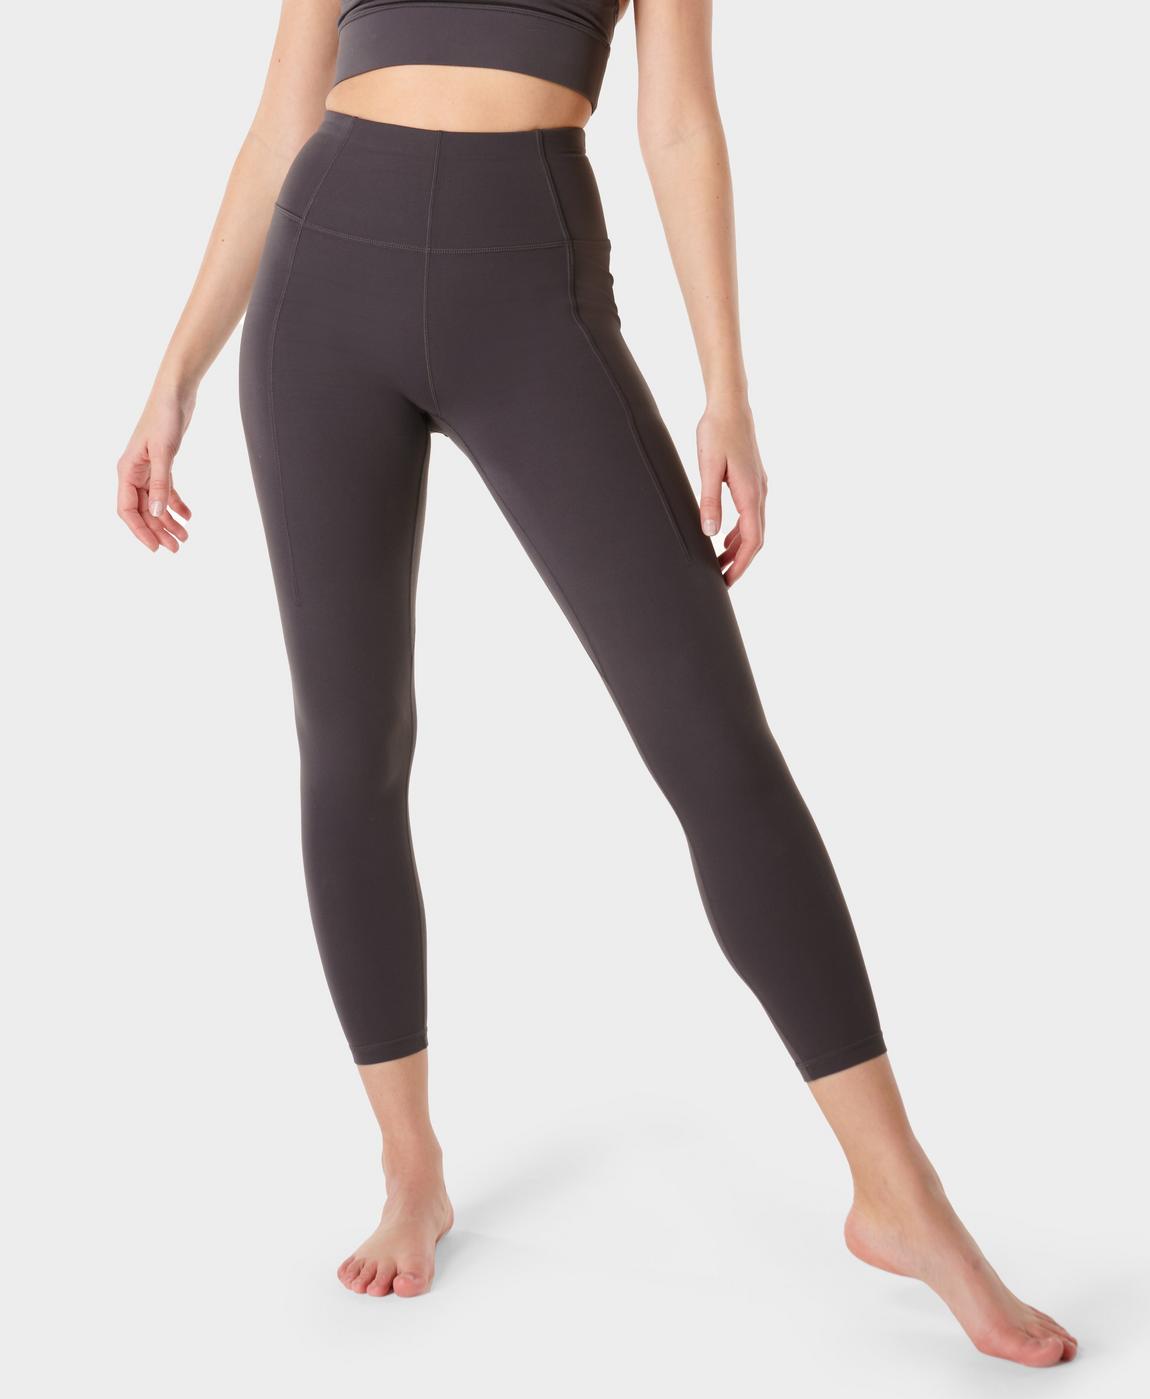 Super Soft 7/8 Yoga Leggings - Urban Grey